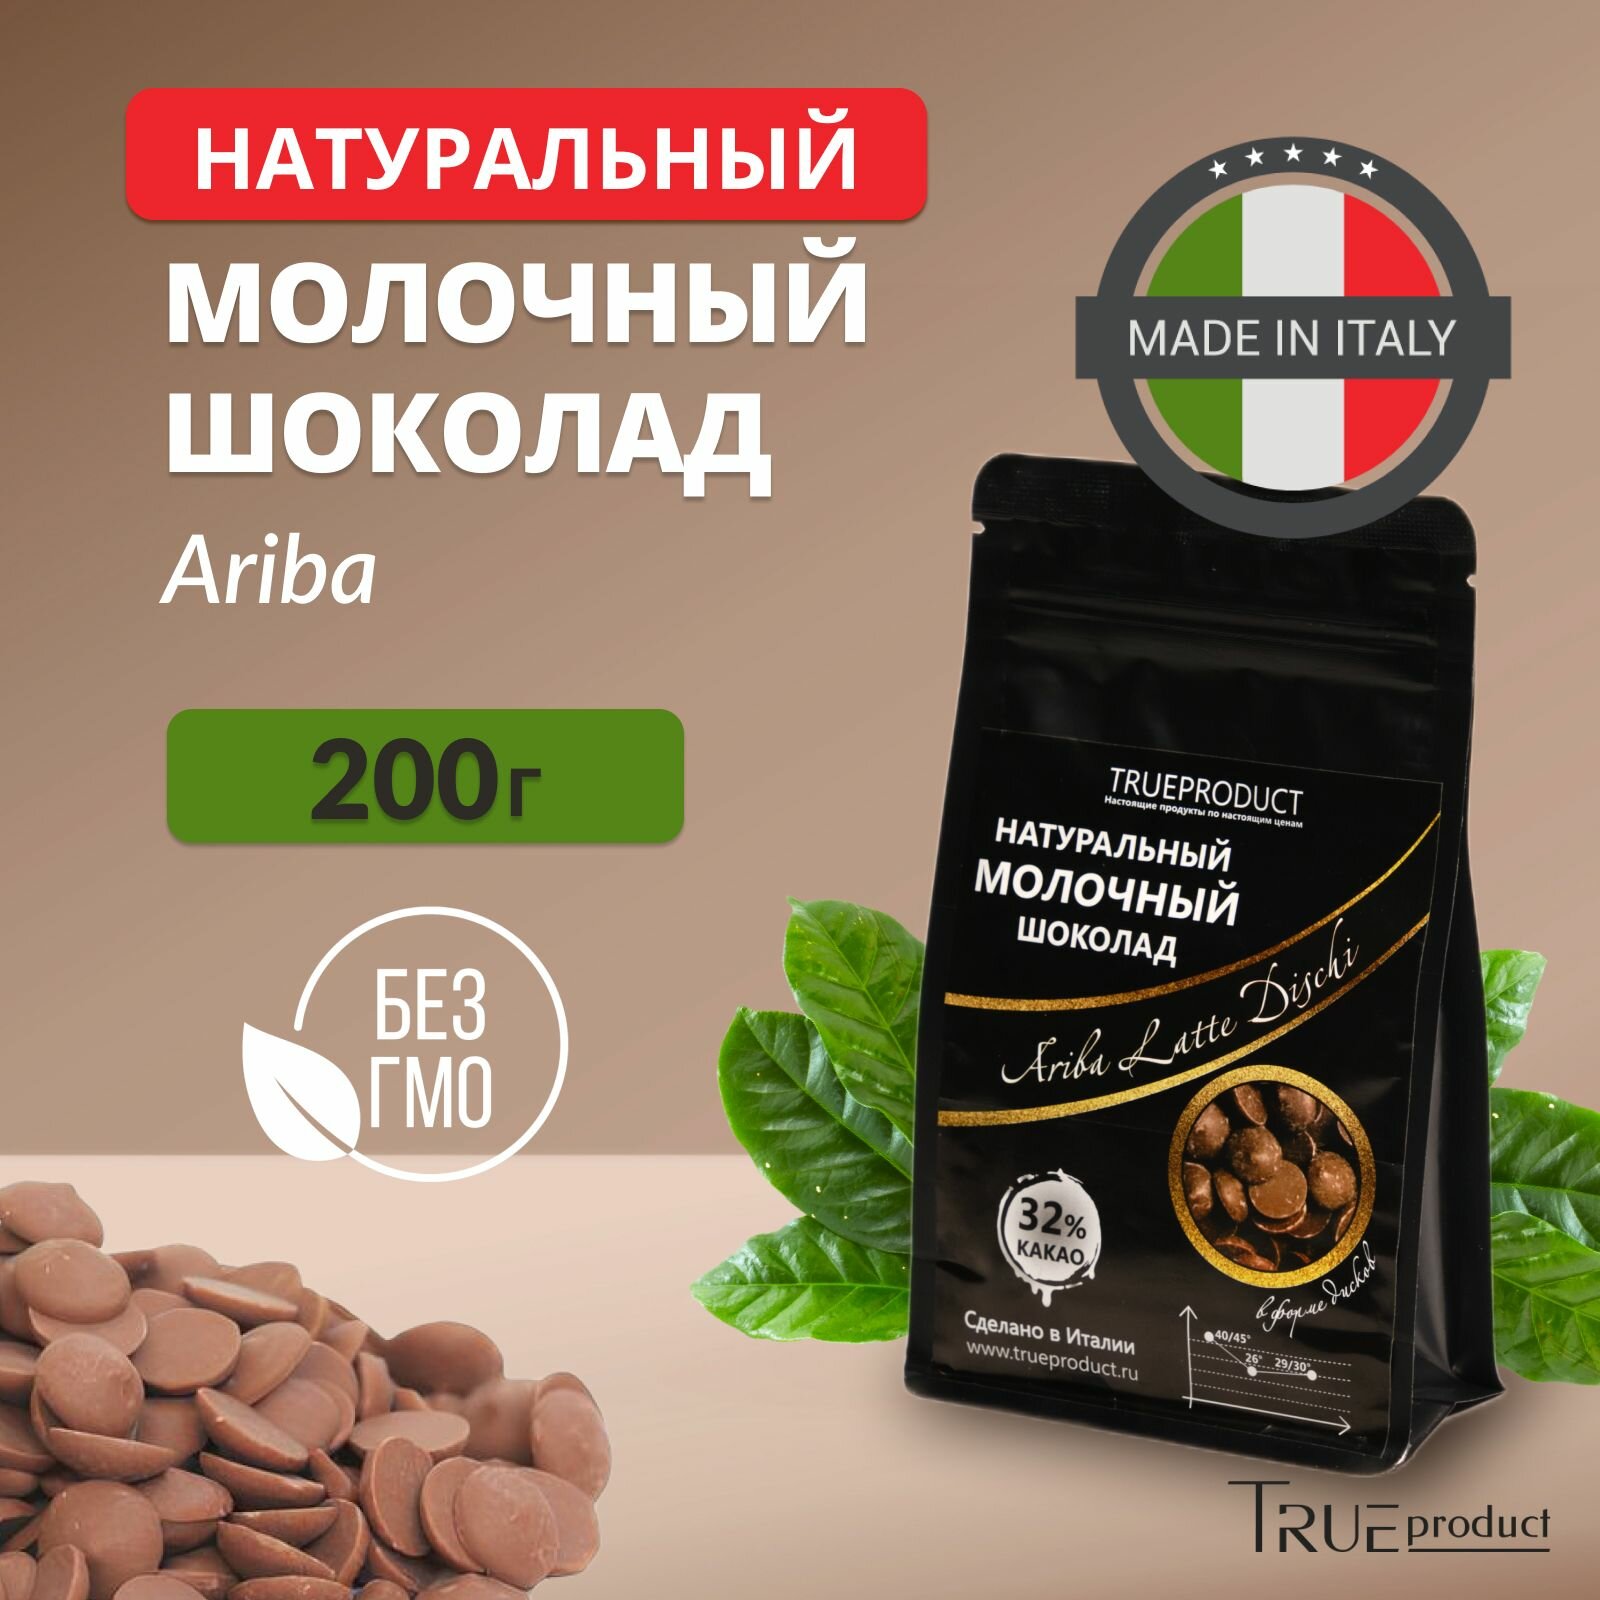 Молочный шоколад Ariba Latte Dischi 32% в дисках, 200 гр